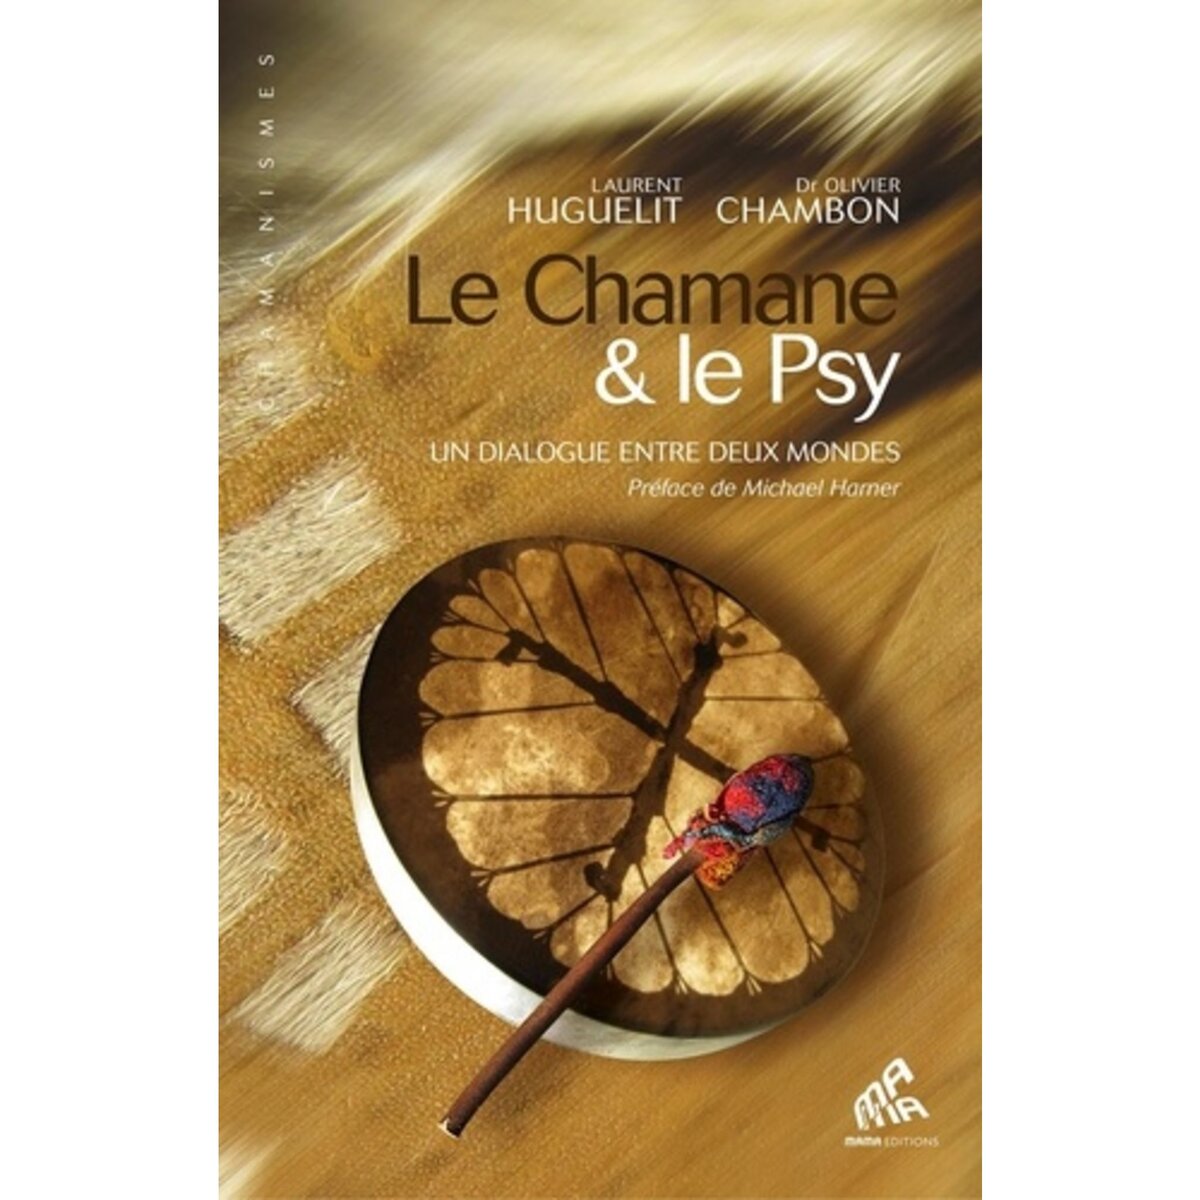  LE CHAMANE & LE PSY. UN DIALOGUE ENTRE DEUX MONDES, Huguelit Laurent